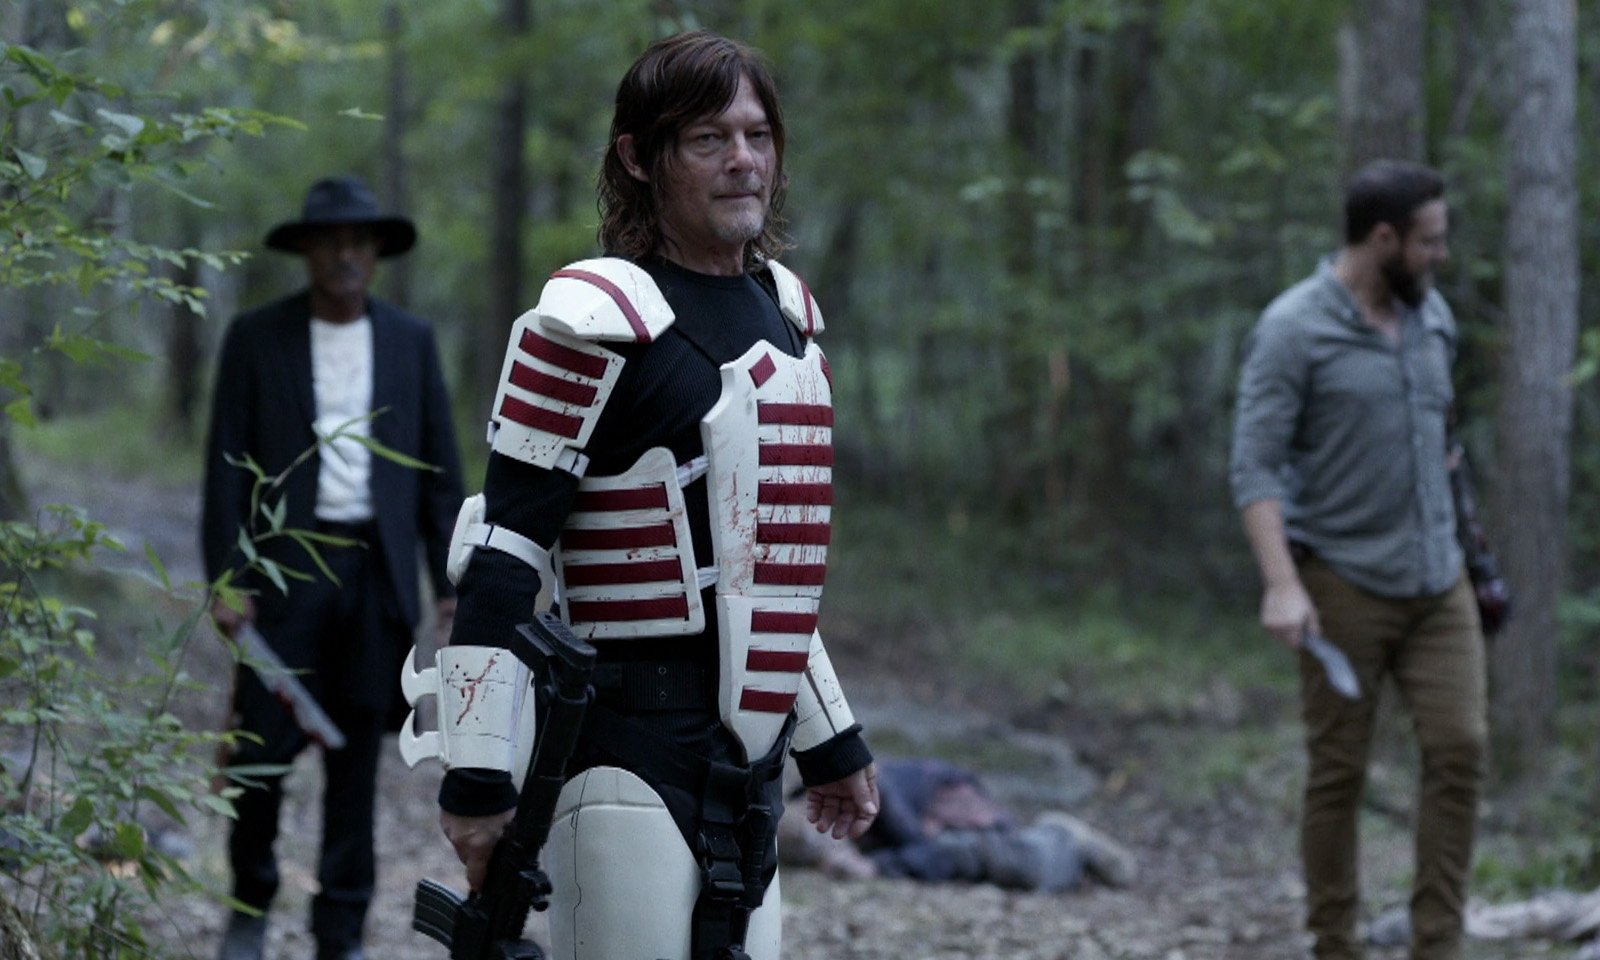 Daryl, Gabriel e Aaron na floresta após matarem alguns walkers no episódio 15 da 11ª temporada de The Walking Dead.